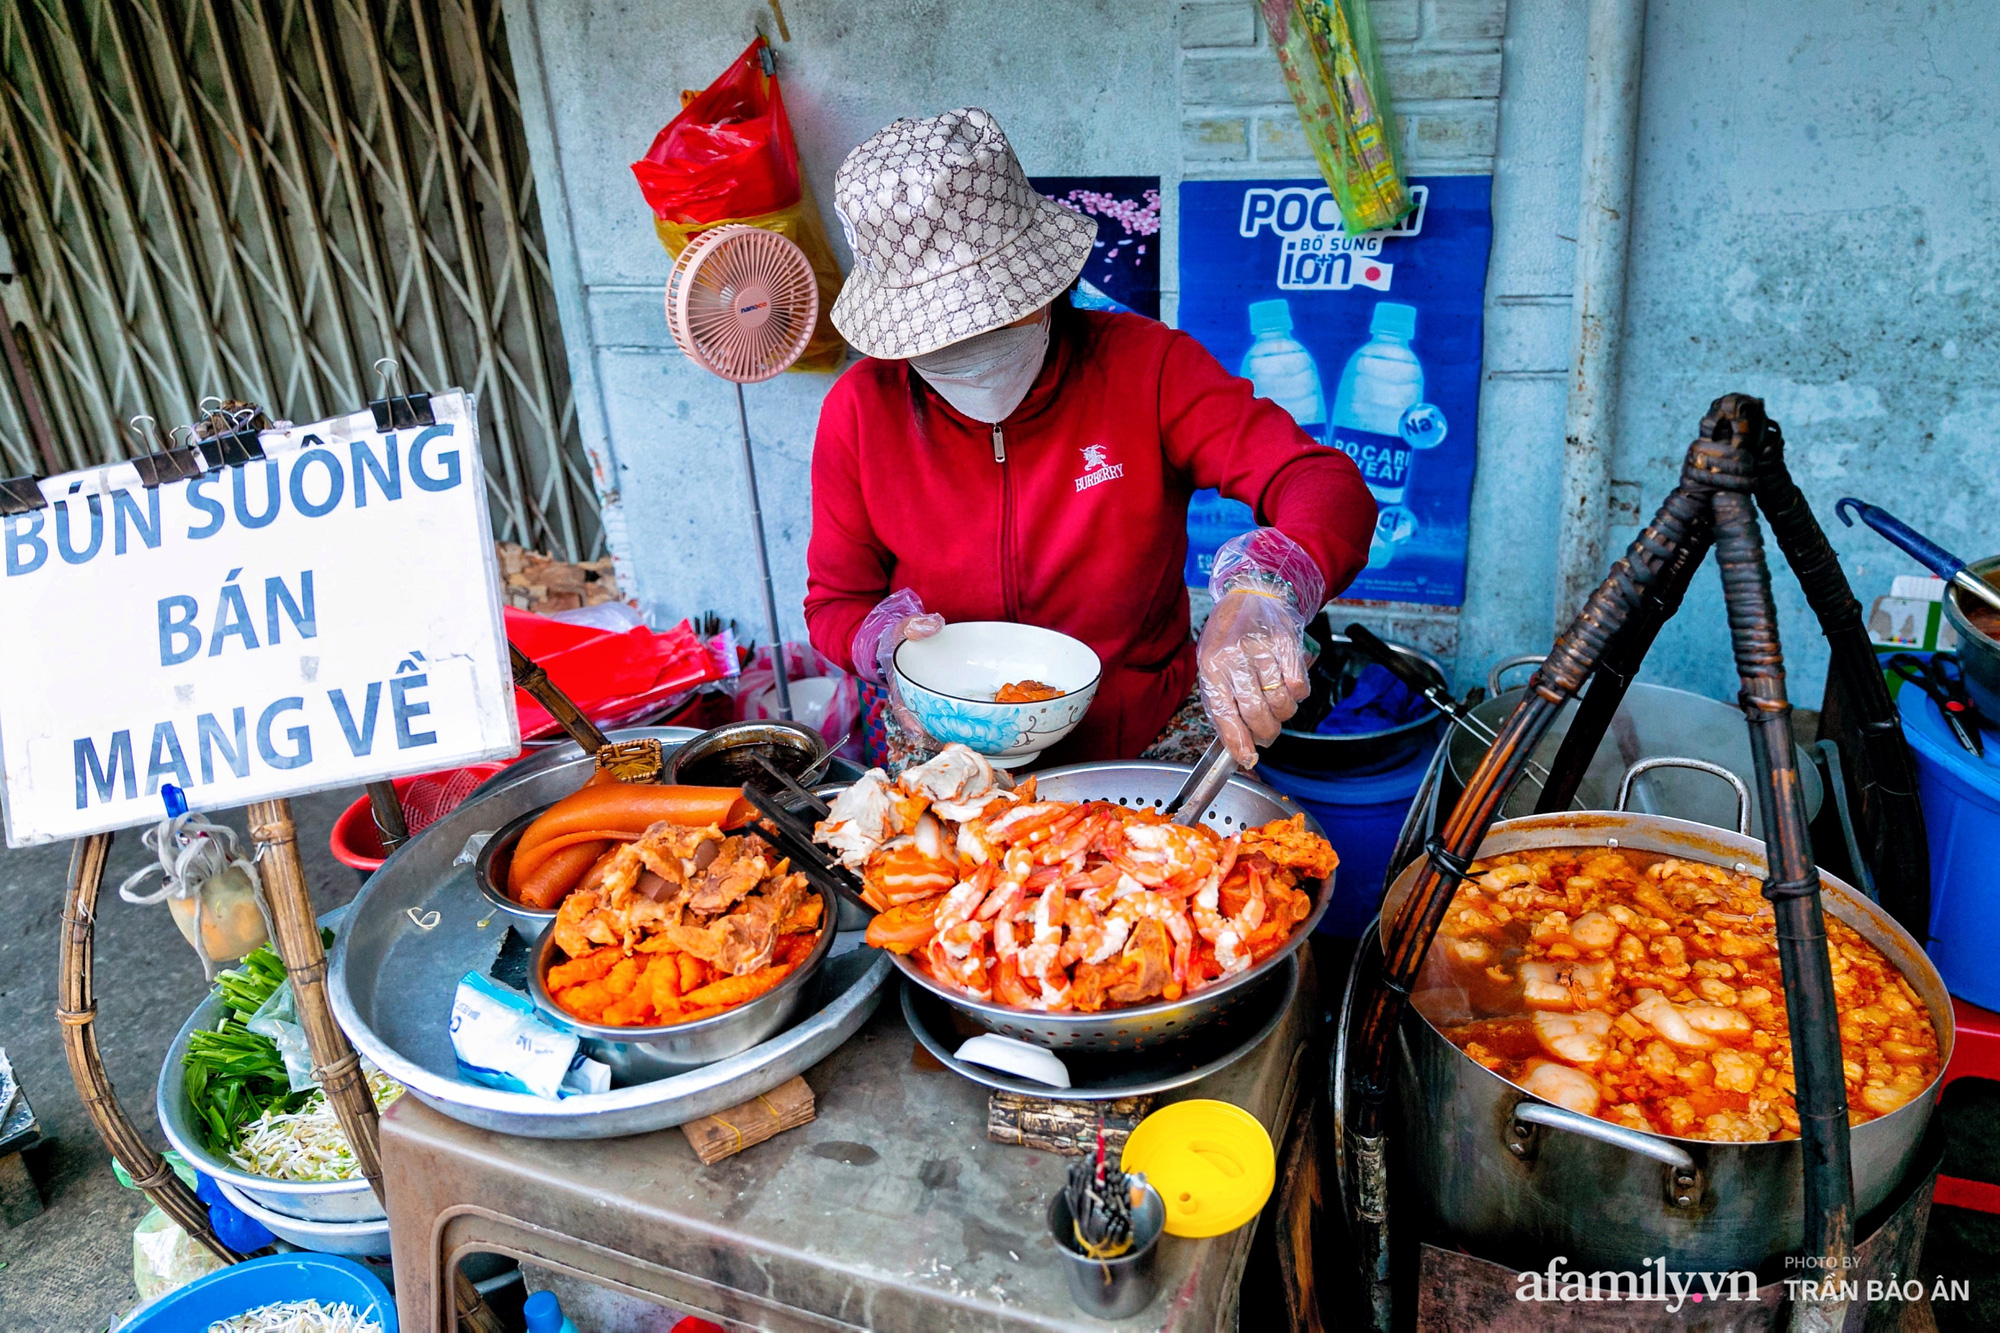 Gánh bún suông cực hiếm ở Sài Gòn truyền nhau đến 3 đời và lời đồn nấu bún từ con đuông khiến nhiều người cực tò mò - Ảnh 1.